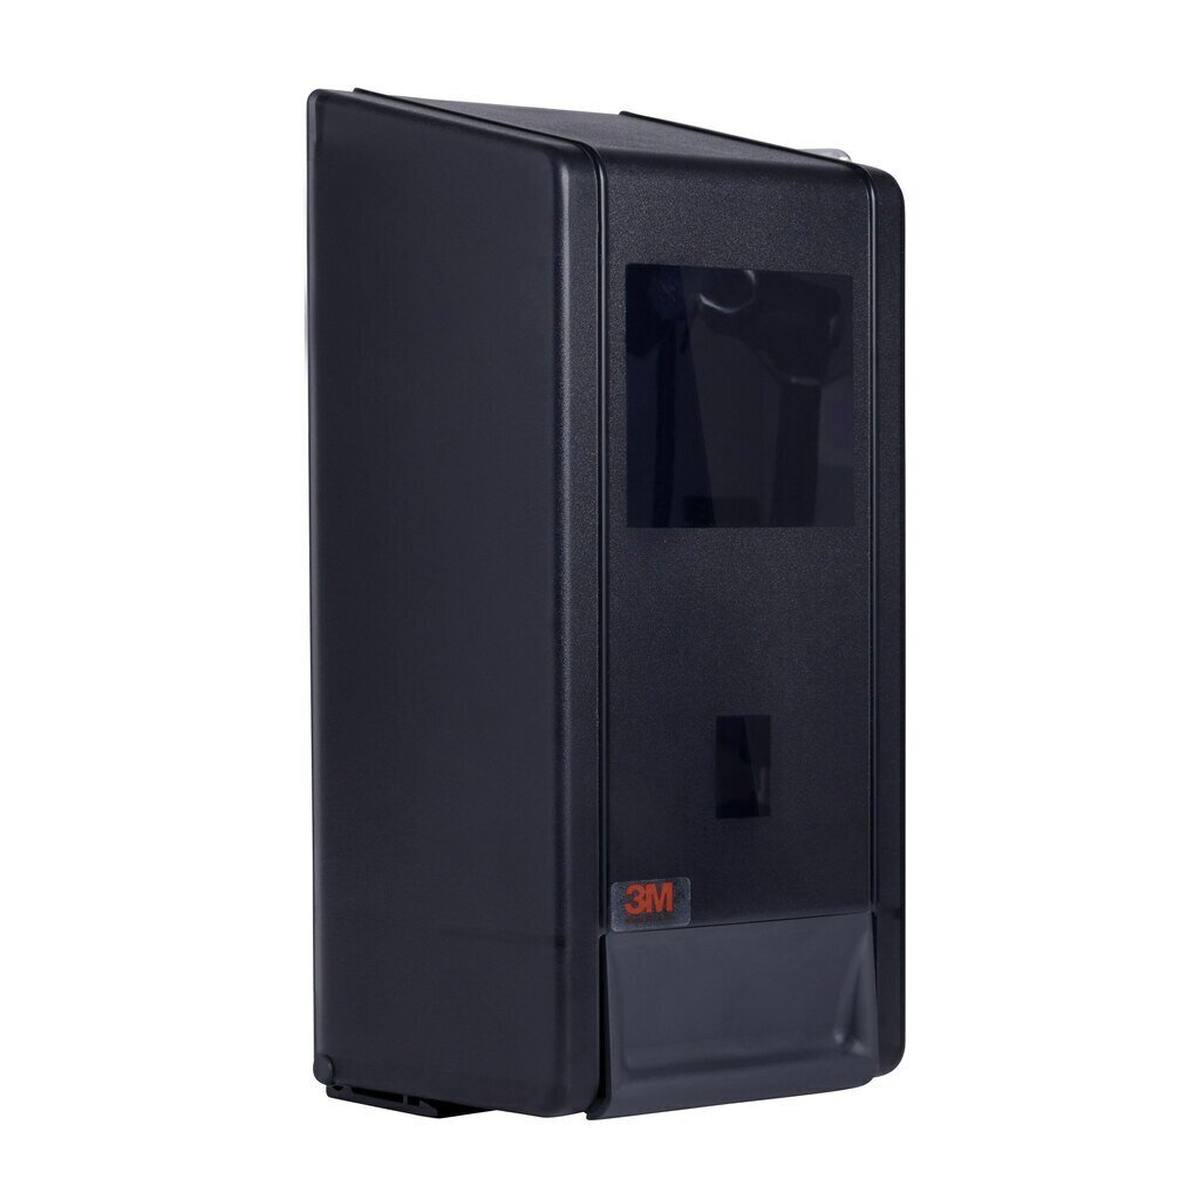 3M Dispenser für Hautschutz-Produkte, 1,4 l #50804